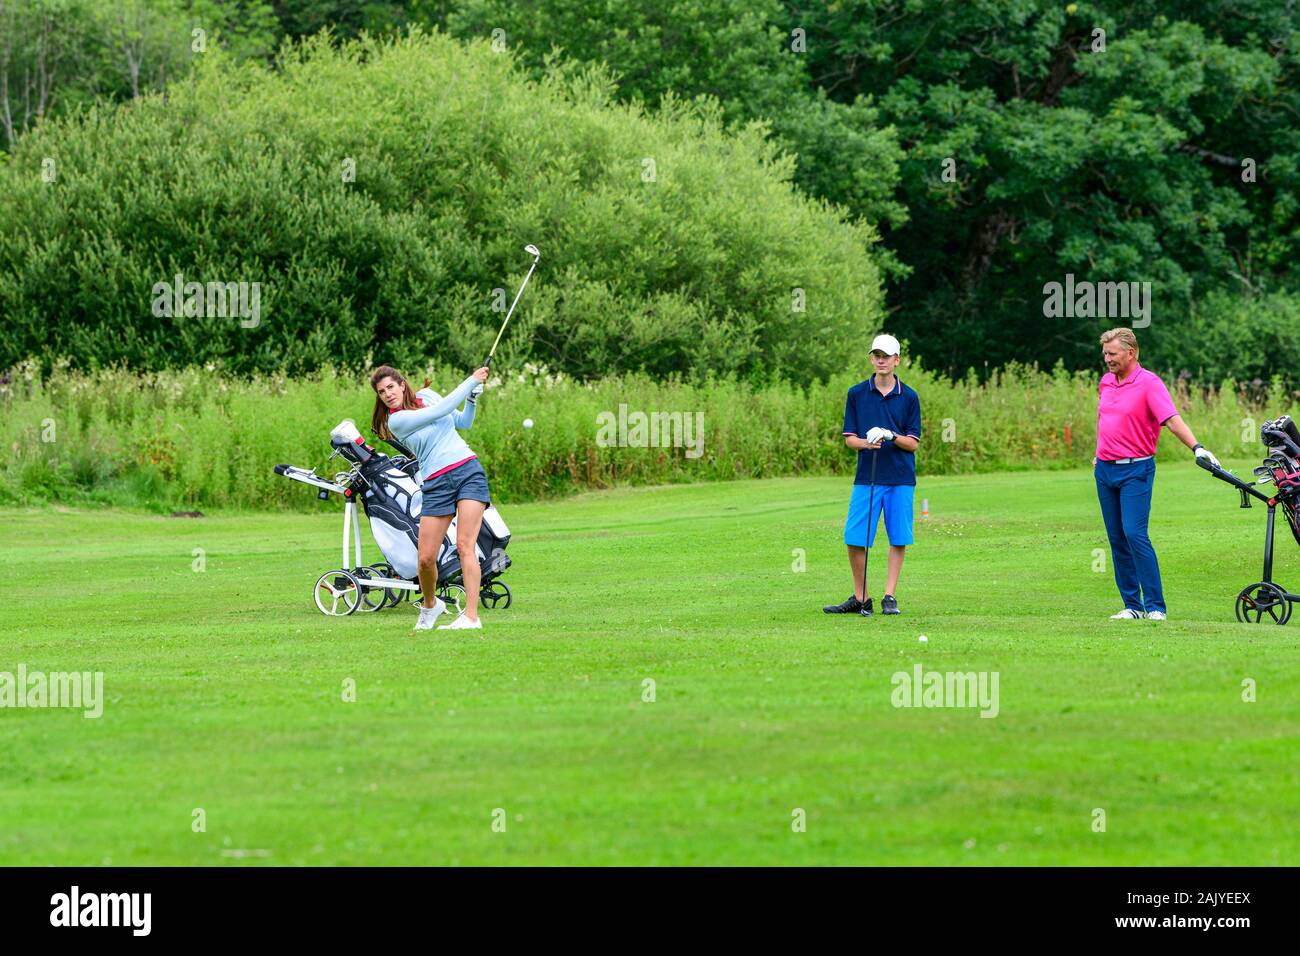 Le Golf comme sport famille - famille vol jouant un cours de Parkland Banque D'Images